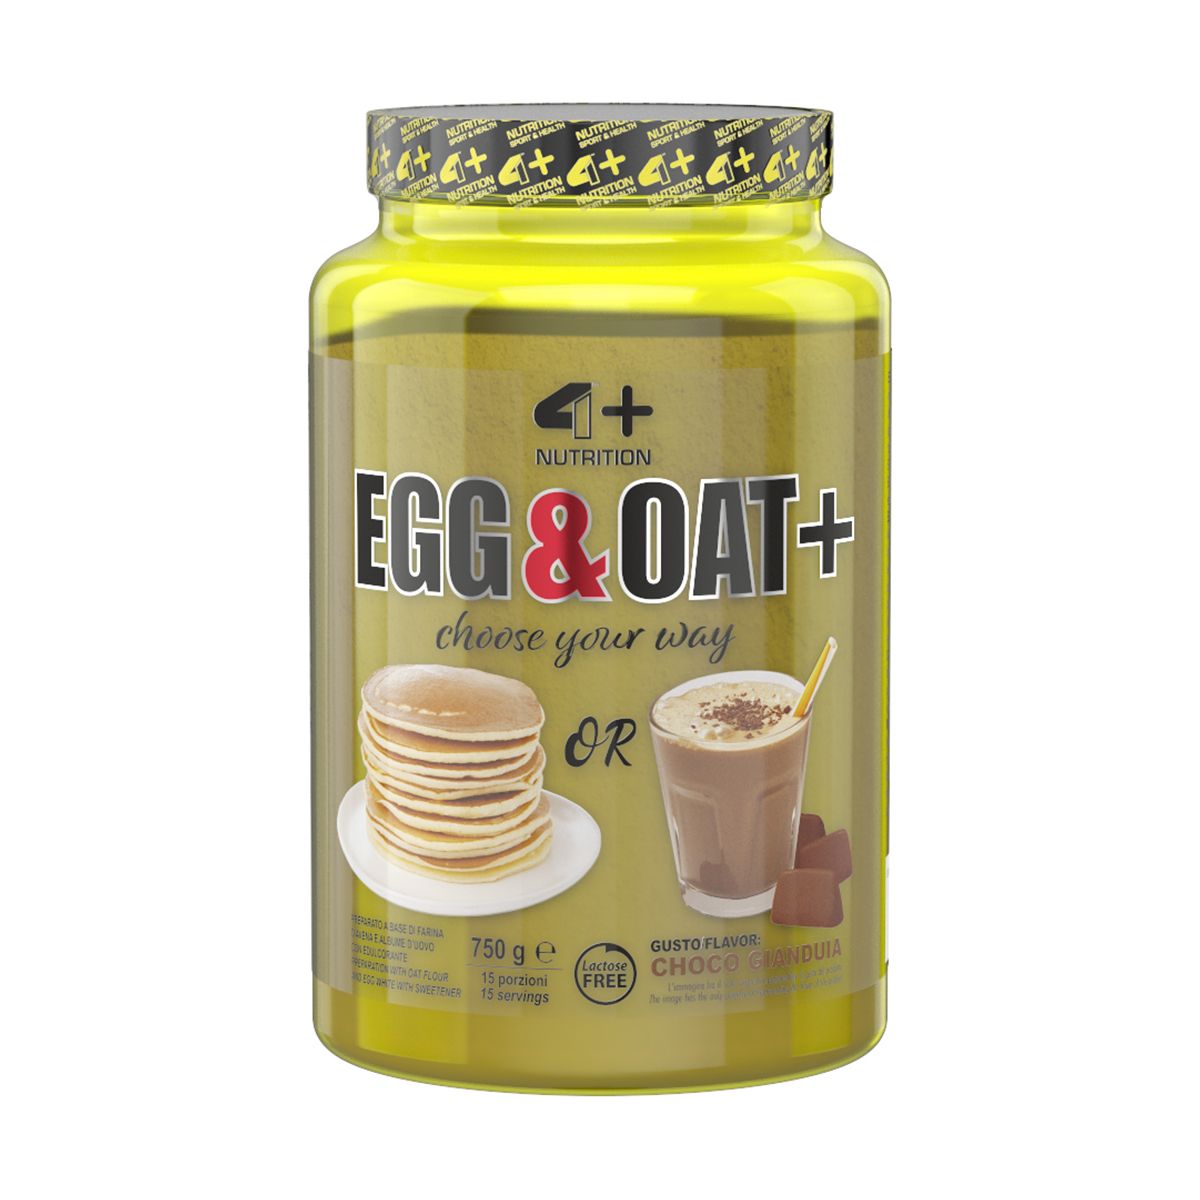 4+ Egg & Oat+ 750g